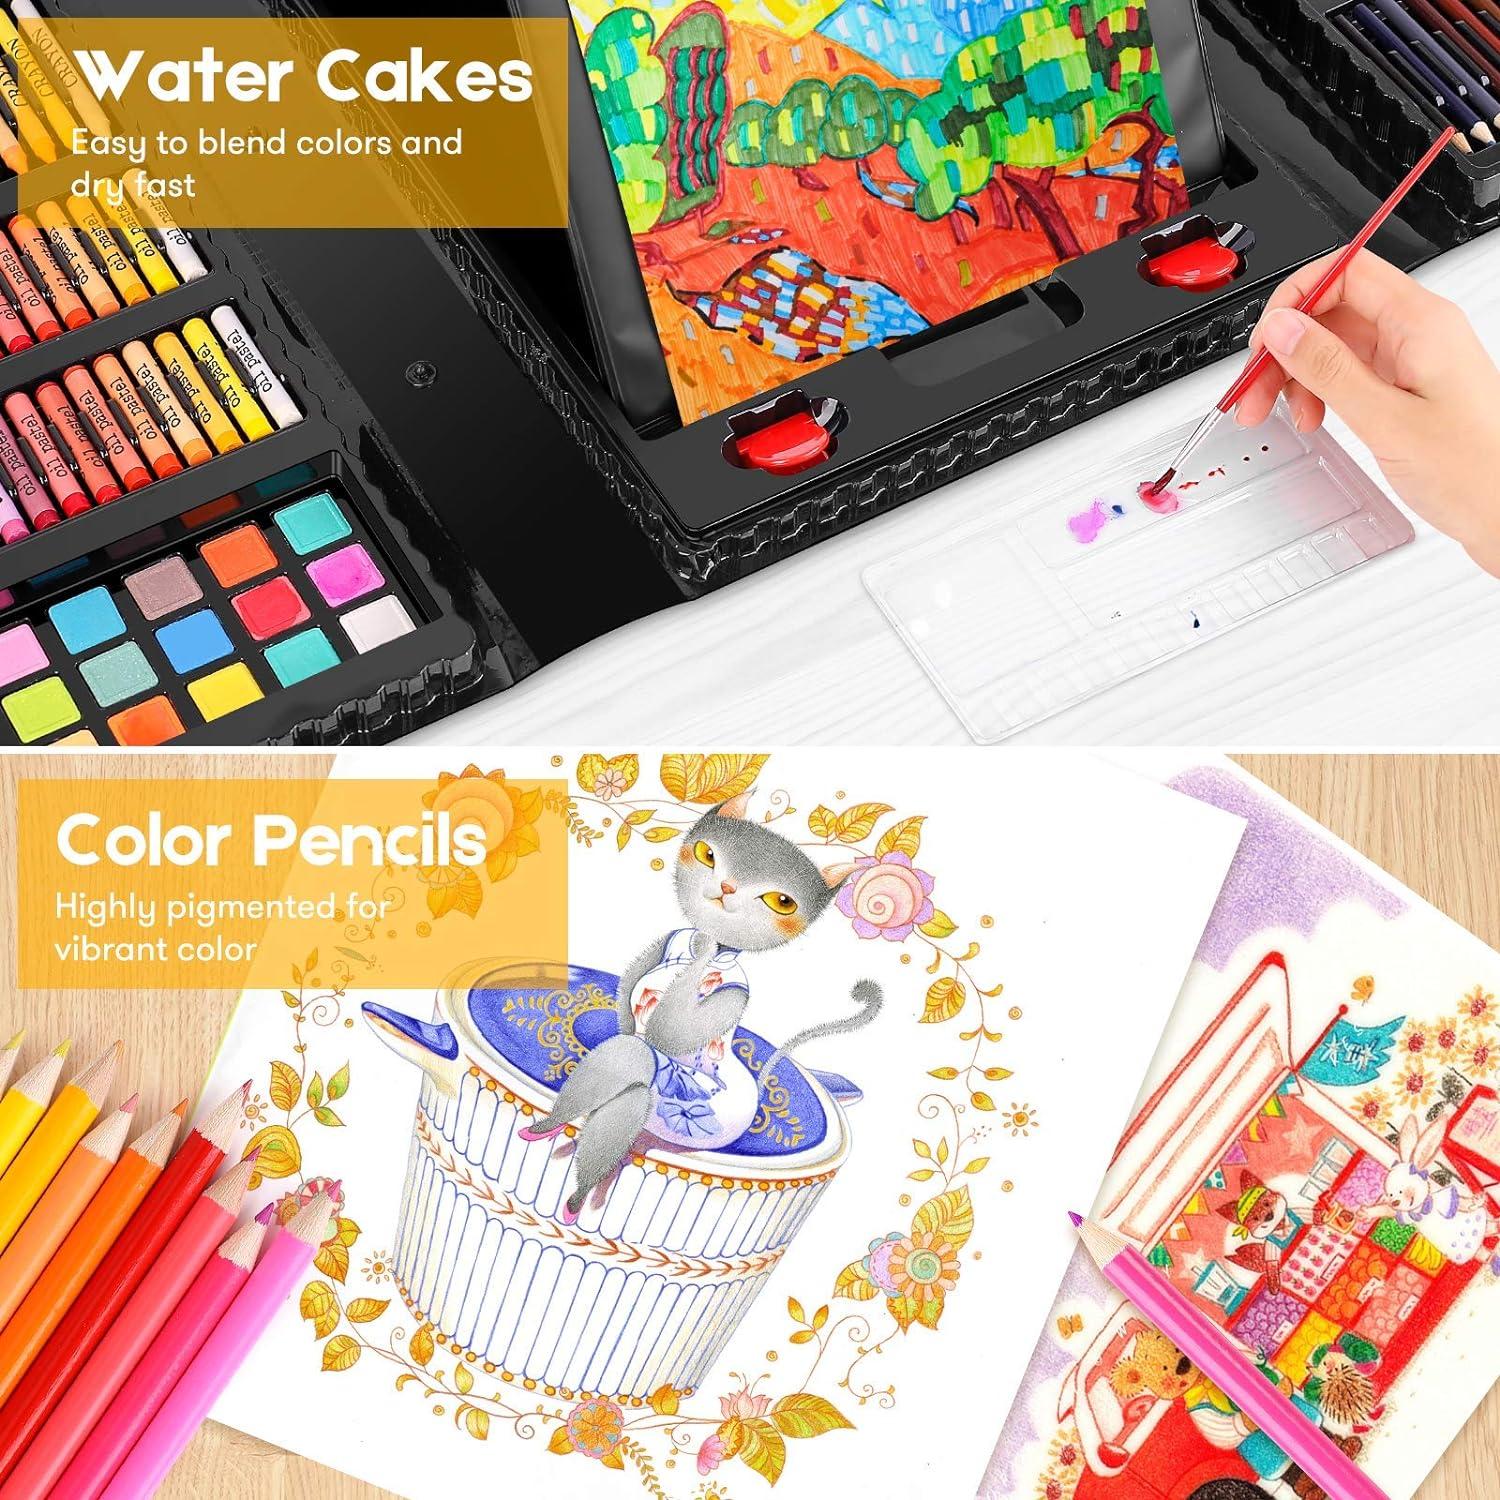 iBayam Art Kit Art Supplies Drawing Kits Arts and Crafts for Kids